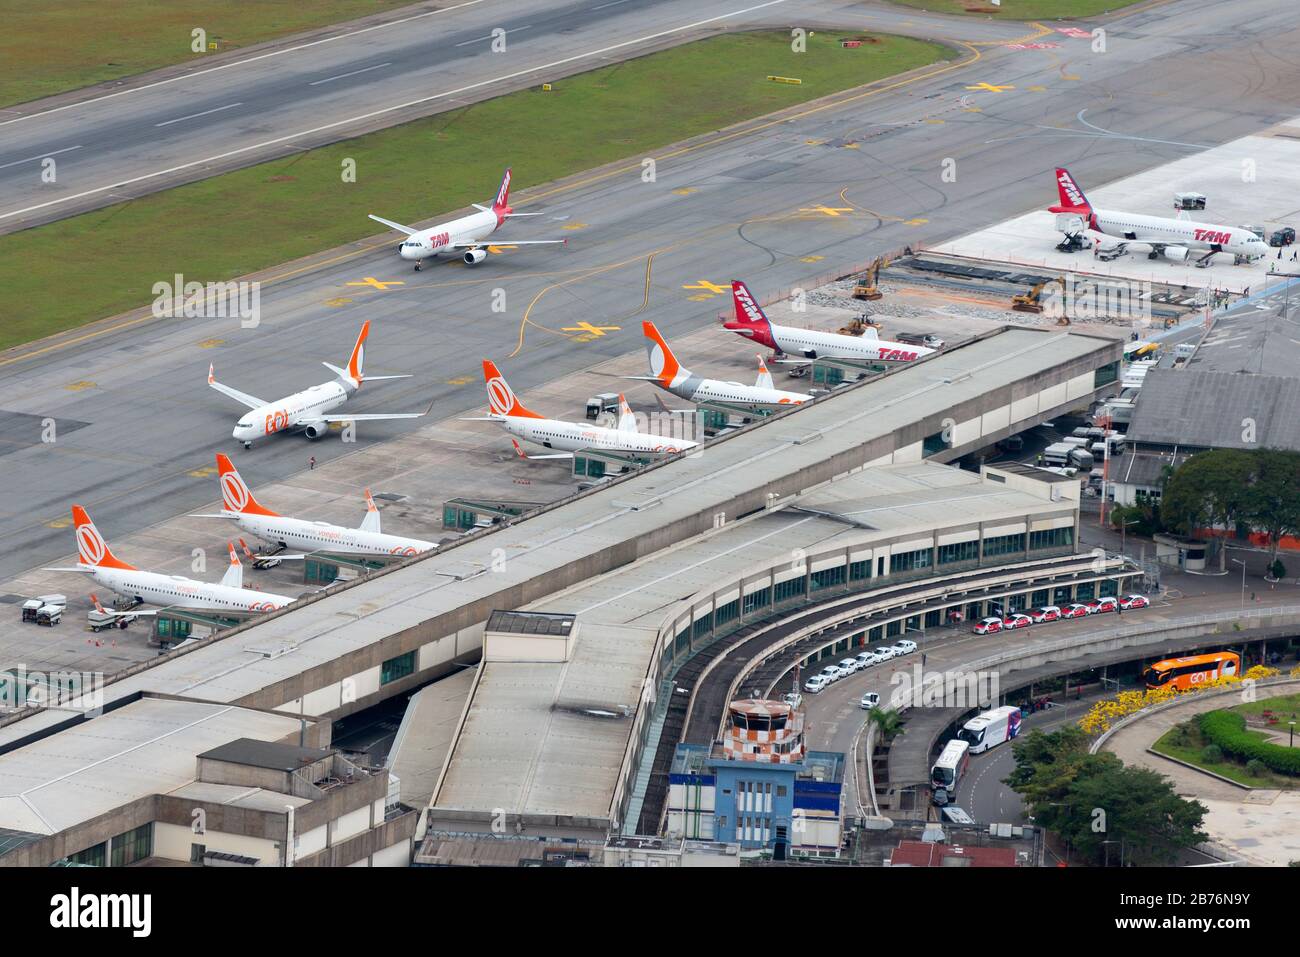 Vue d'ensemble aérienne de l'aéroport Congonhas (CGH / SBSP) de Sao Paulo, Brésil administré par INFRAERO. Terminal d'aéroport très fréquenté utilisé pour les vols domestiques. Banque D'Images